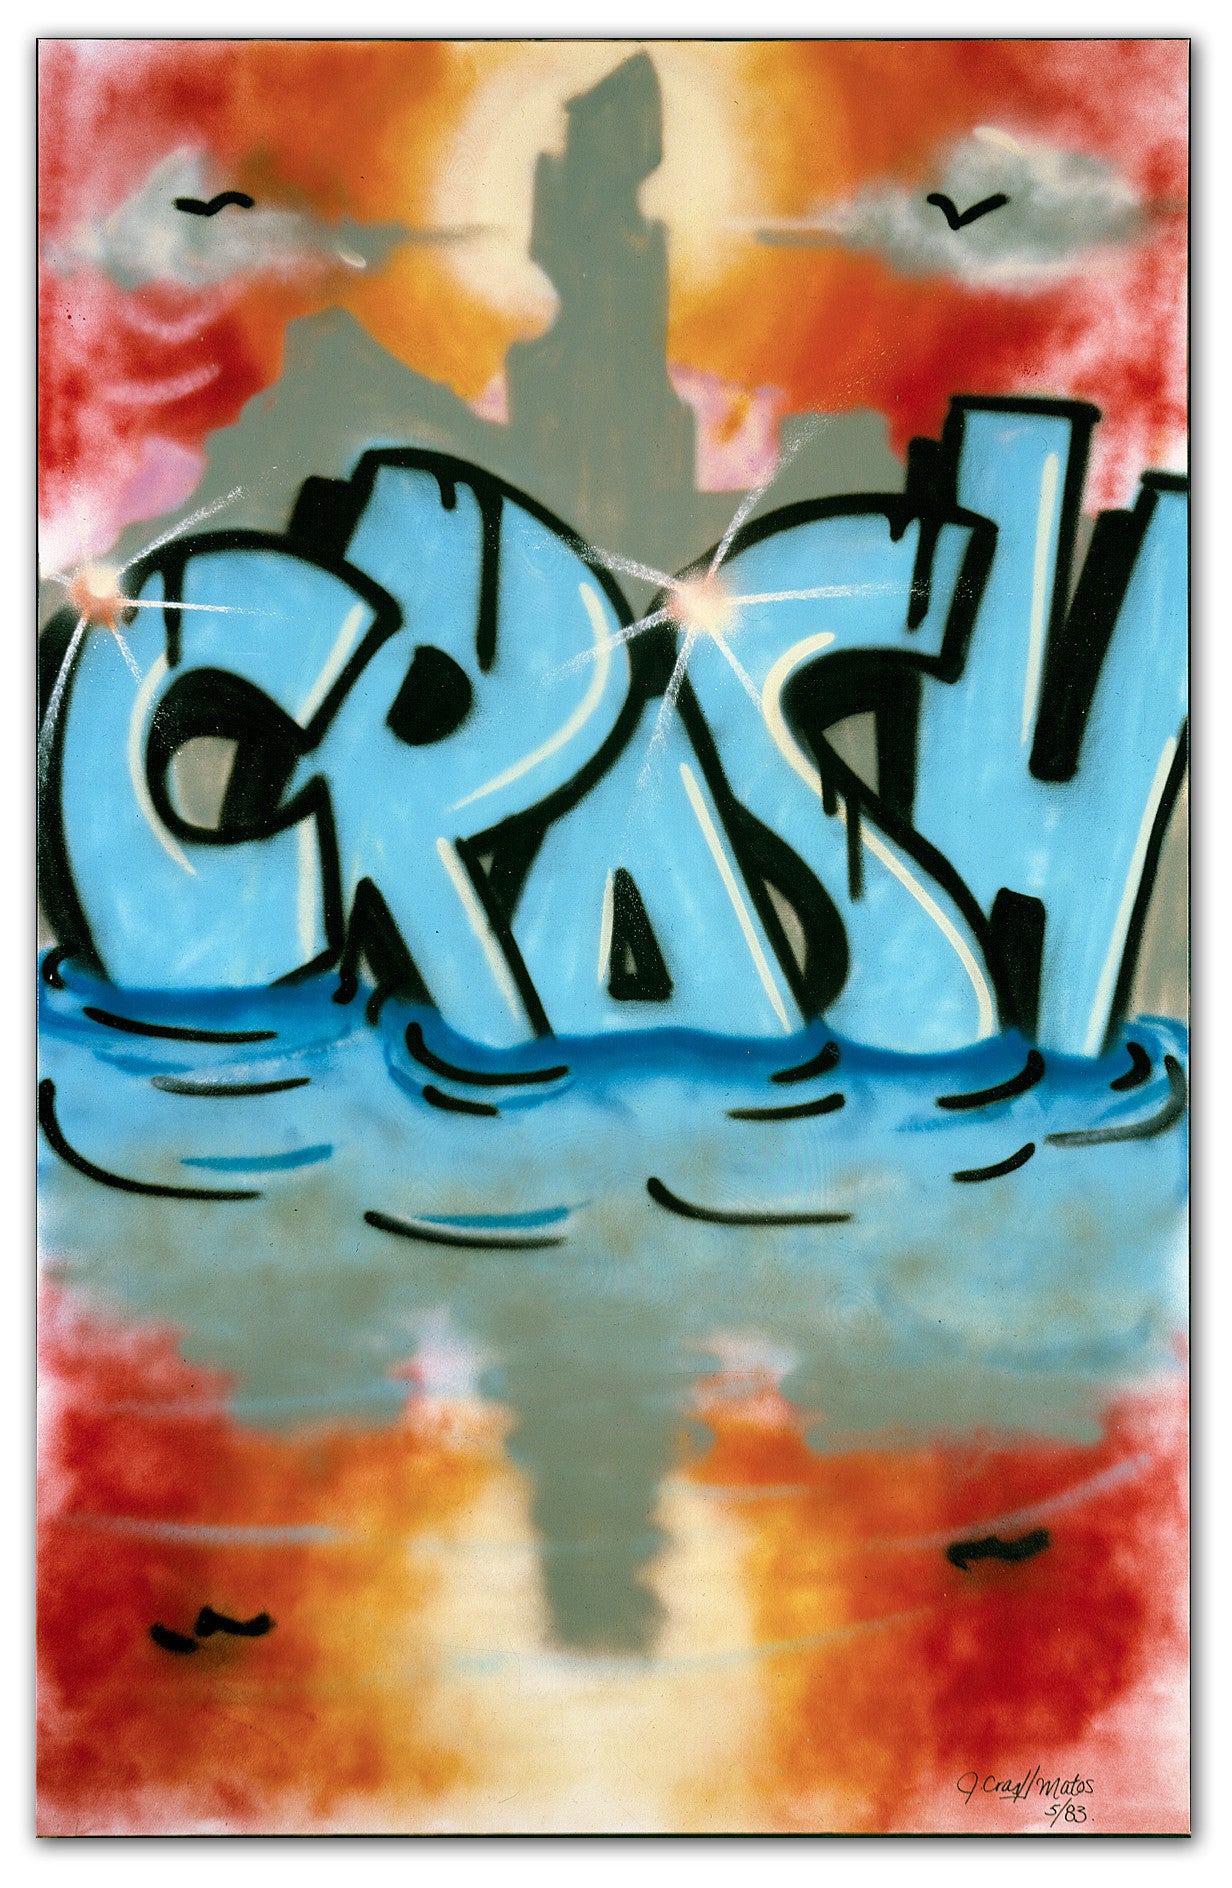 JOHN "CRASH" MATOS -"Graffiti Girl" 1983